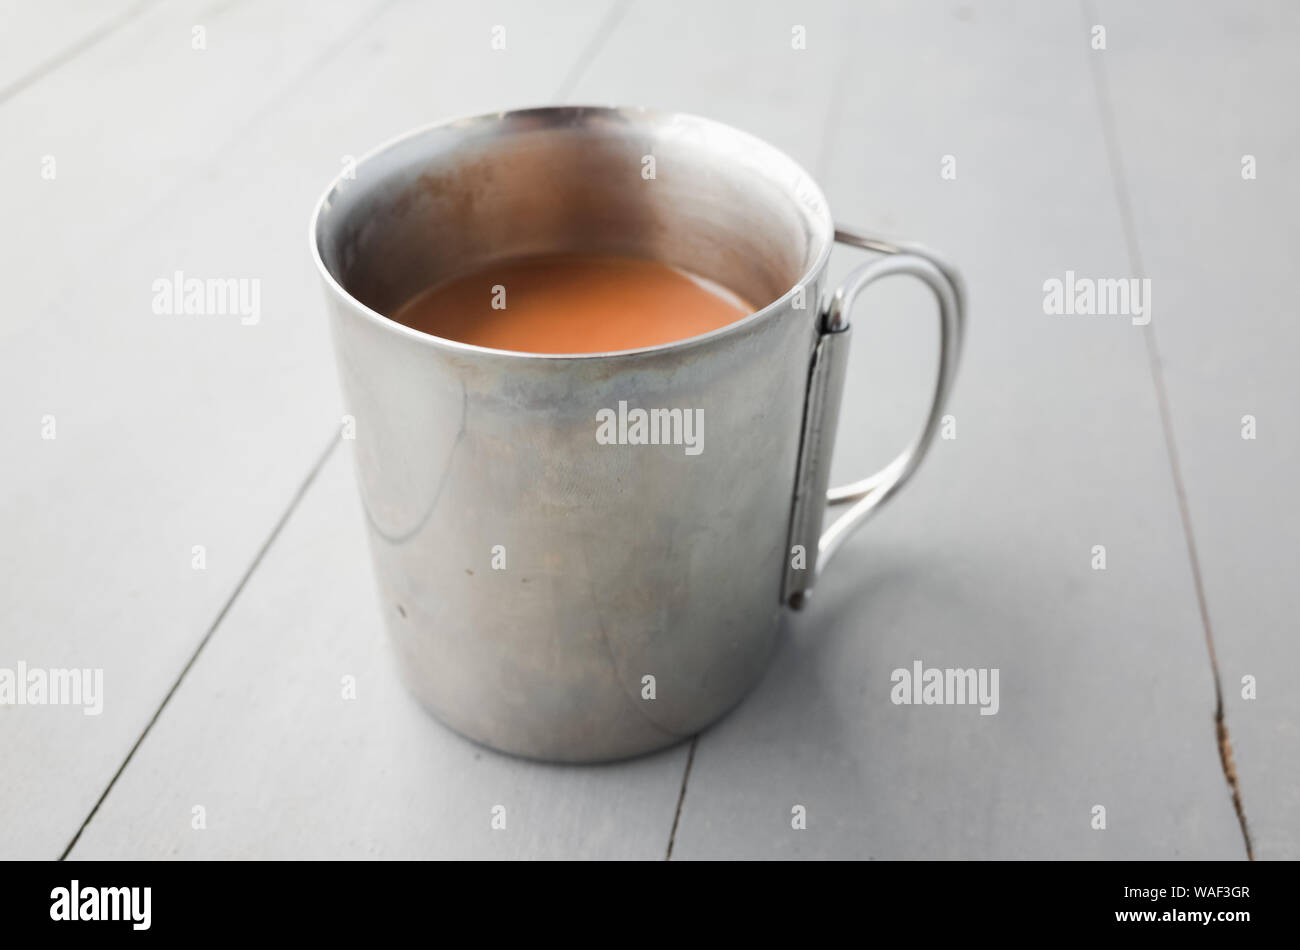 Metall Becher Kaffee mit Milch steht auf einem weißen Holztisch, closeup Foto mit selektiven Fokus Stockfoto